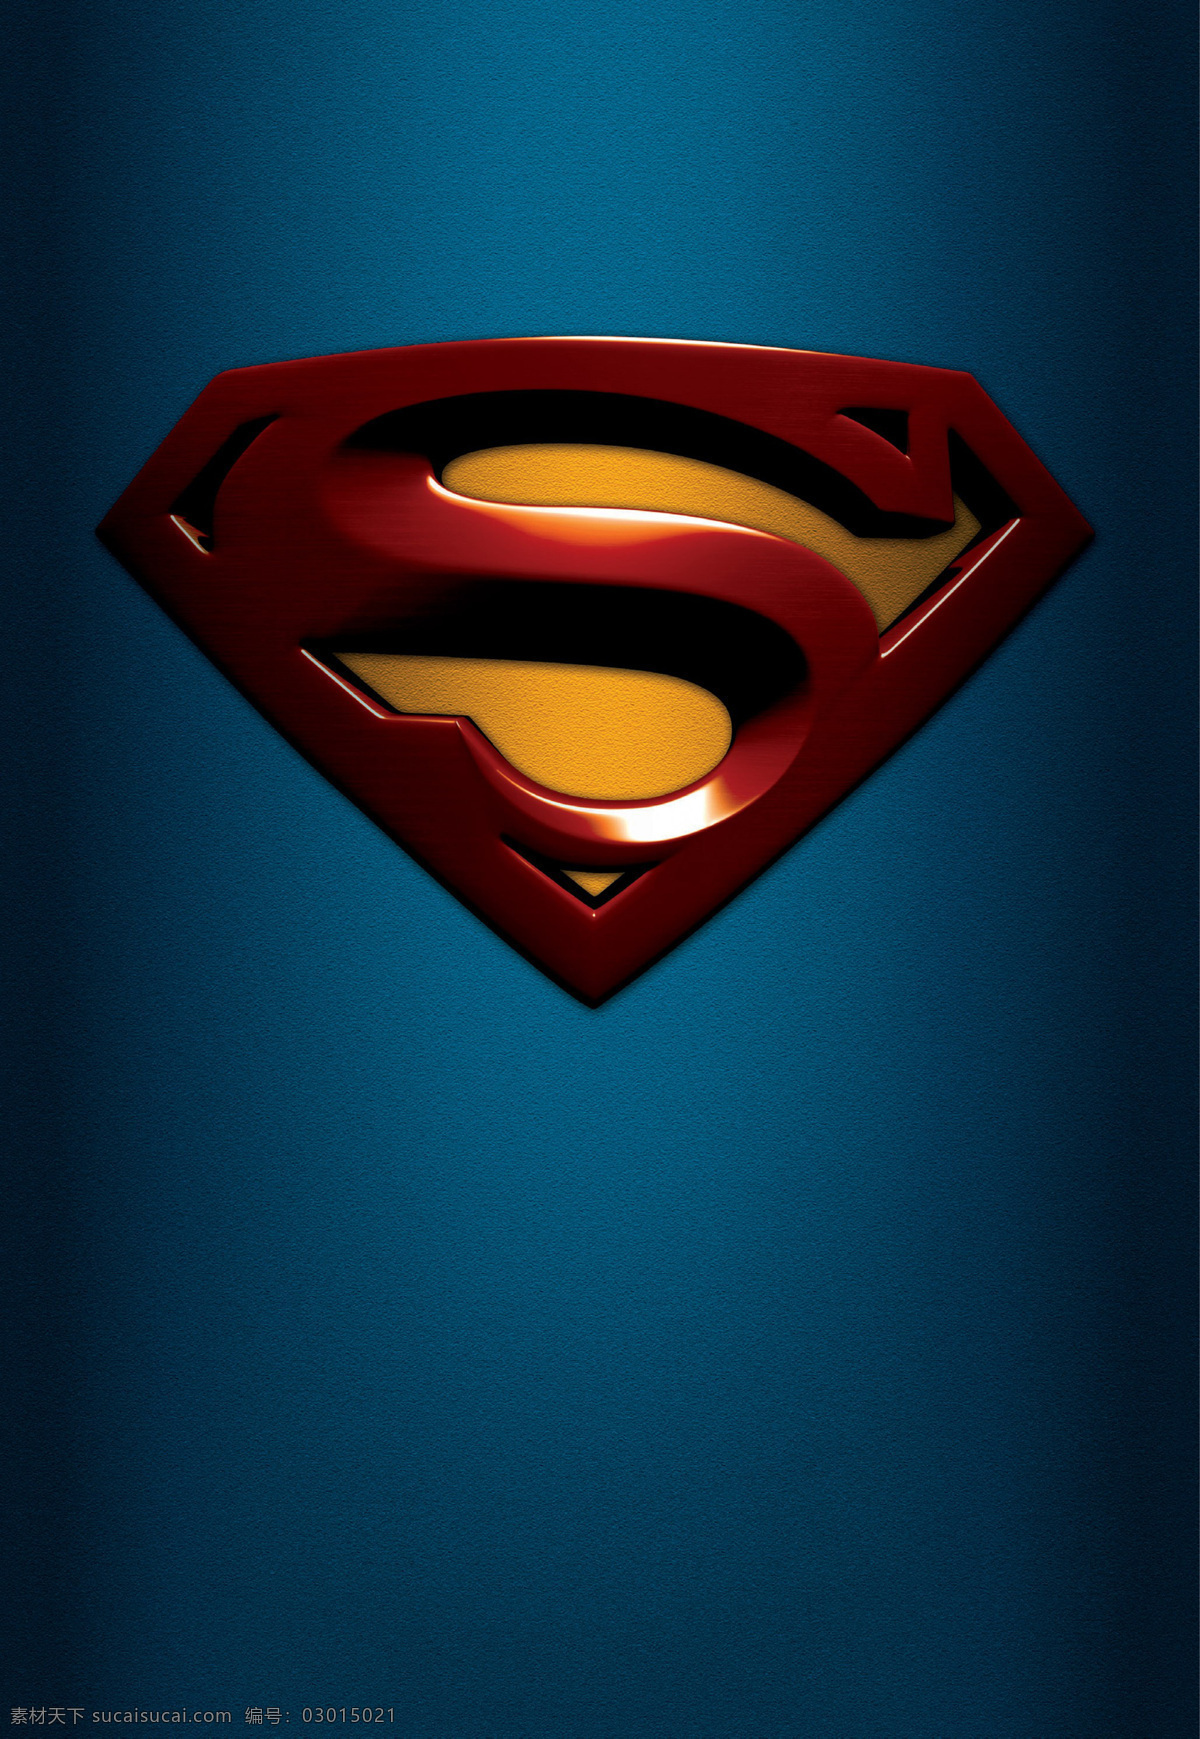 超人 超人归来 logo 布兰登 罗斯 克拉克 dc漫画 电影 电影海报 dcue 文化艺术 影视娱乐